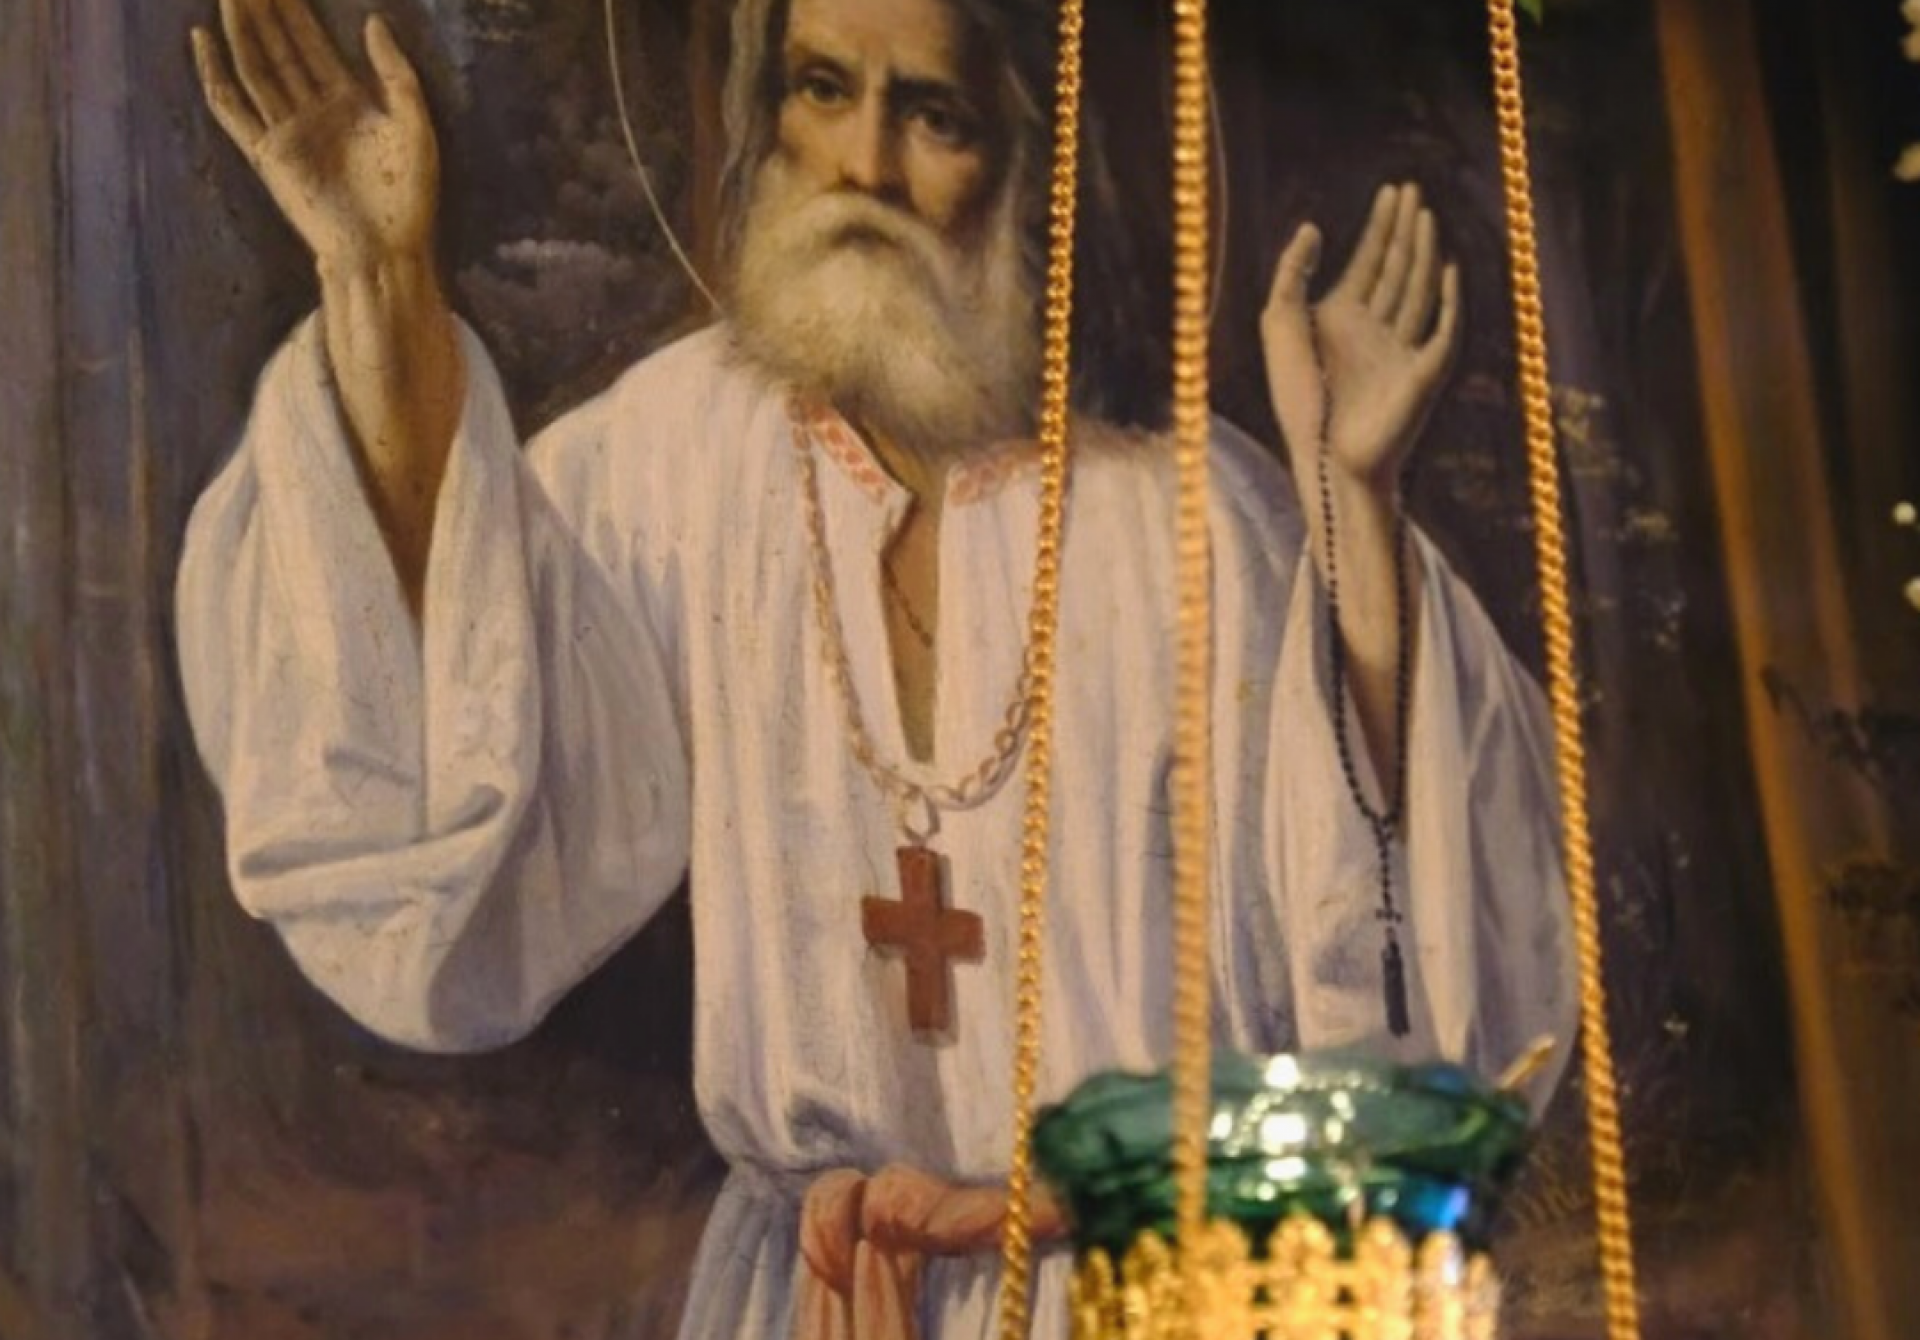 Поздравляем с престольным праздником - днём памяти преподобного Серафима Саровского